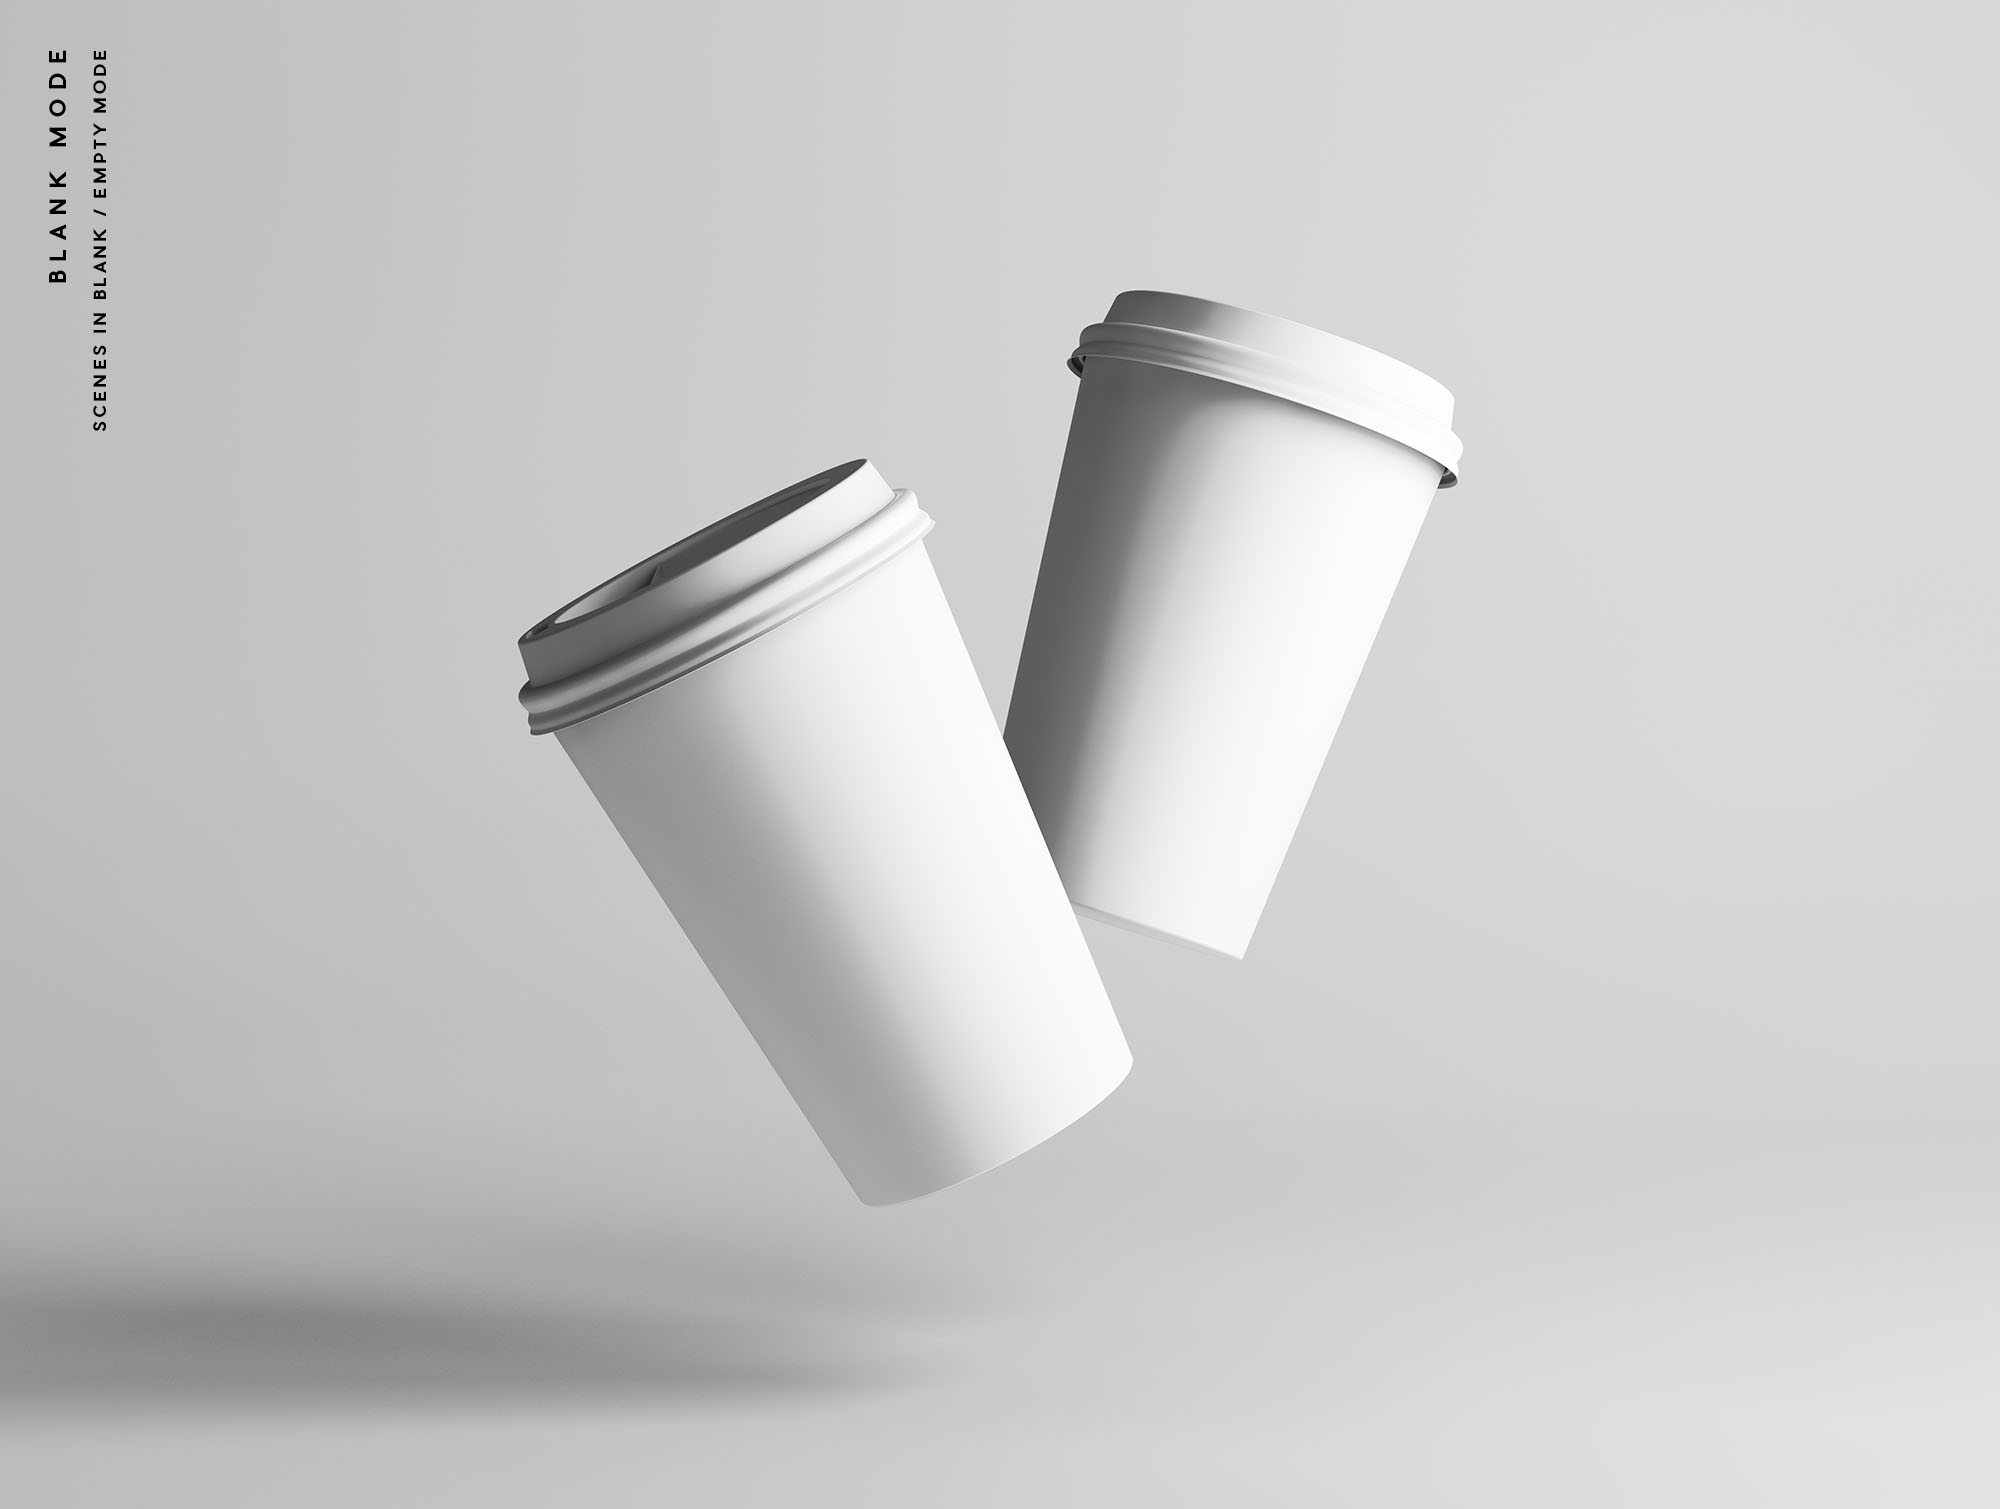 7个咖啡纸杯定制外观设计效果图样机模板 7 Coffee Cup Mockups插图(9)